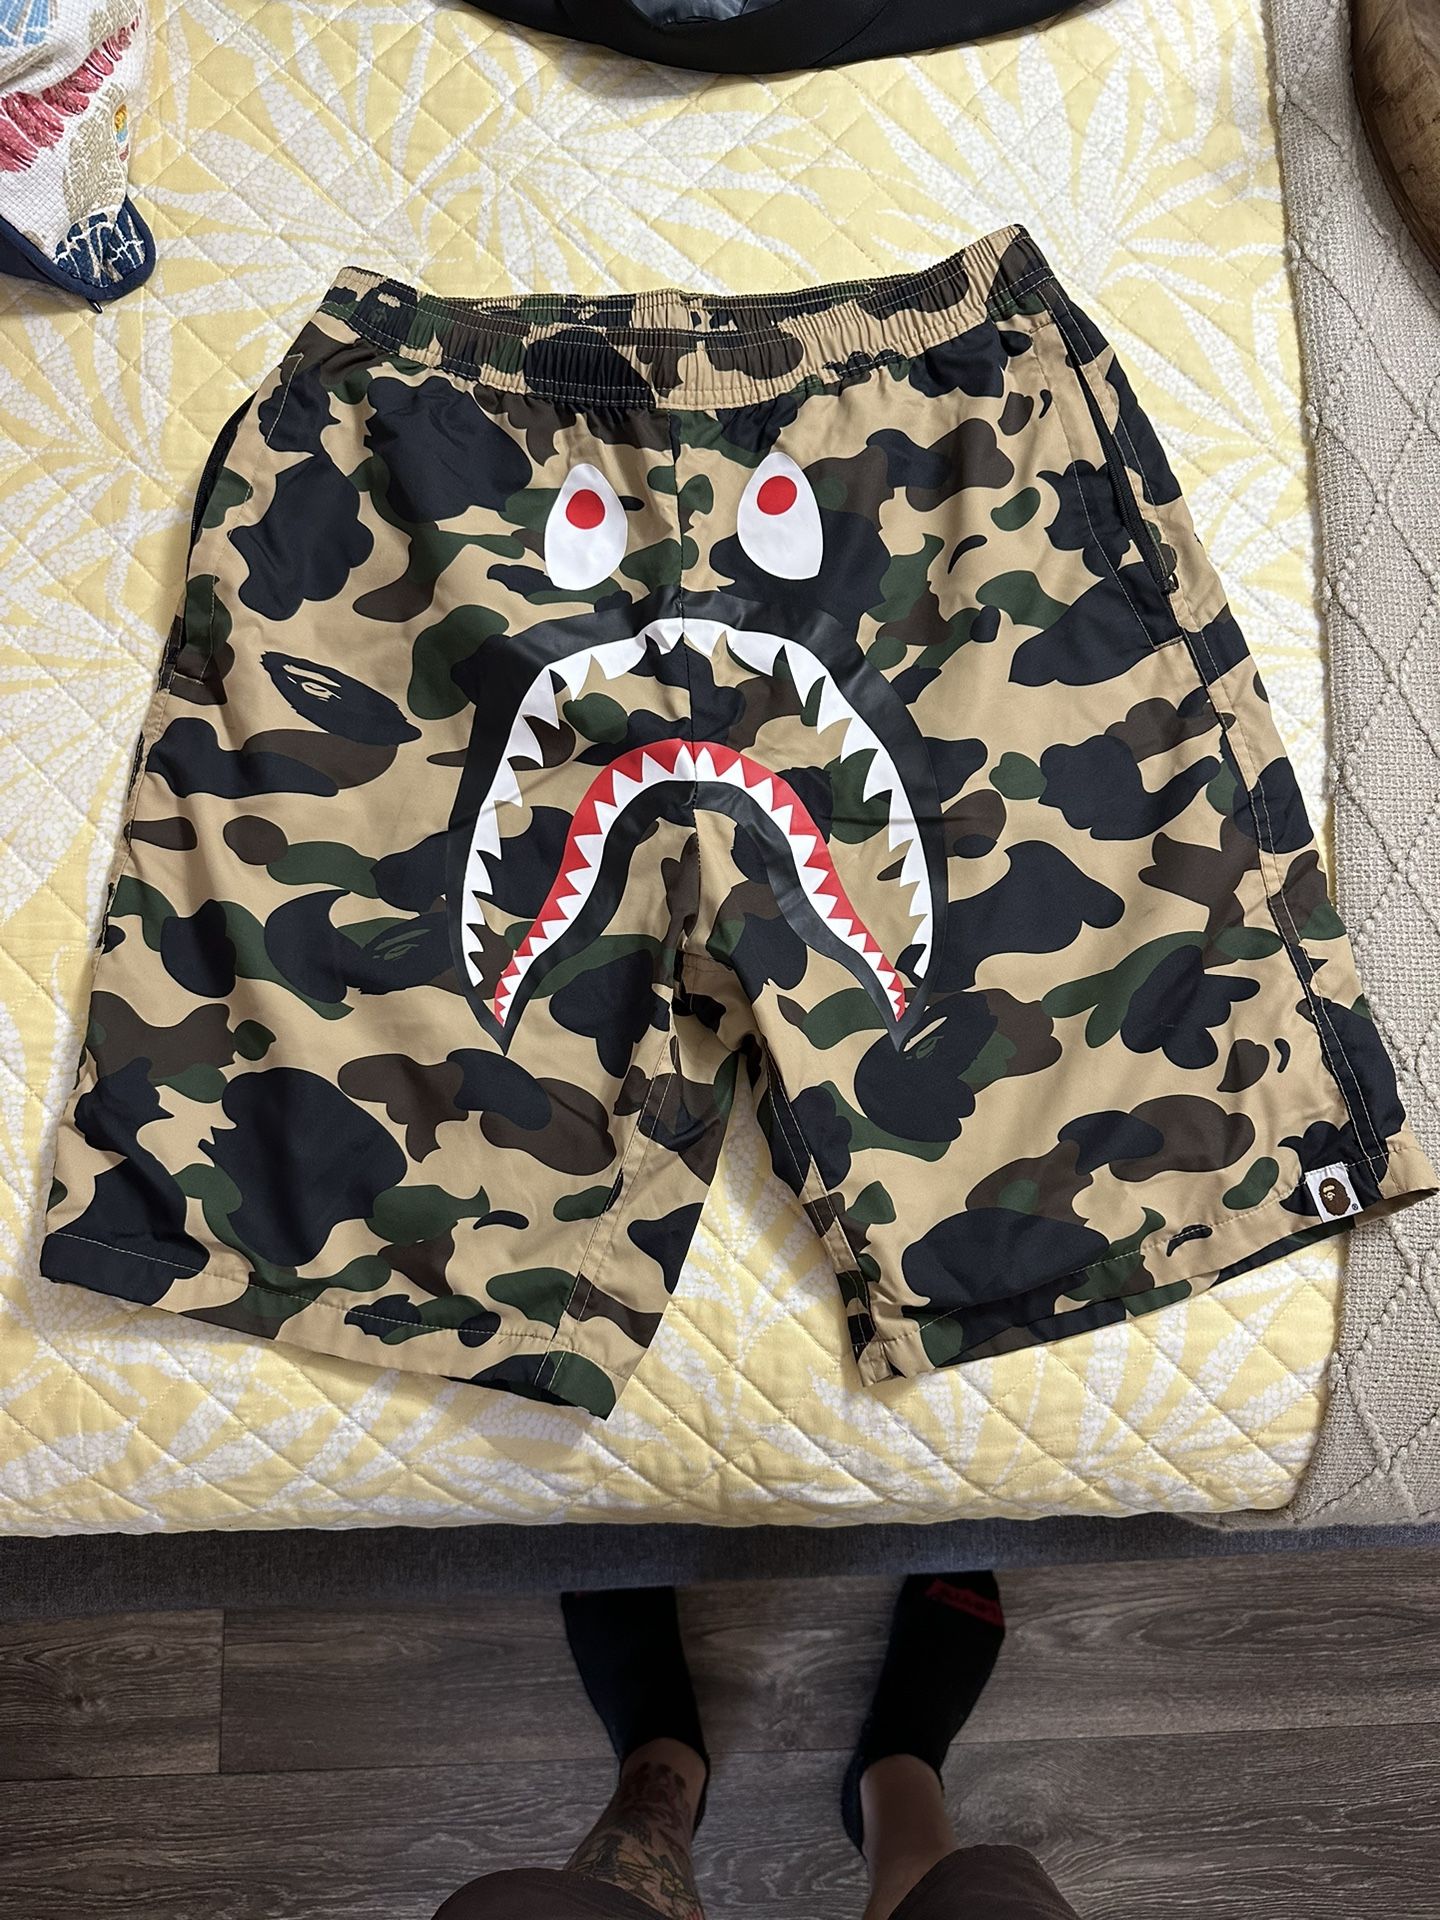 Bape OG Shark Camo Shorts